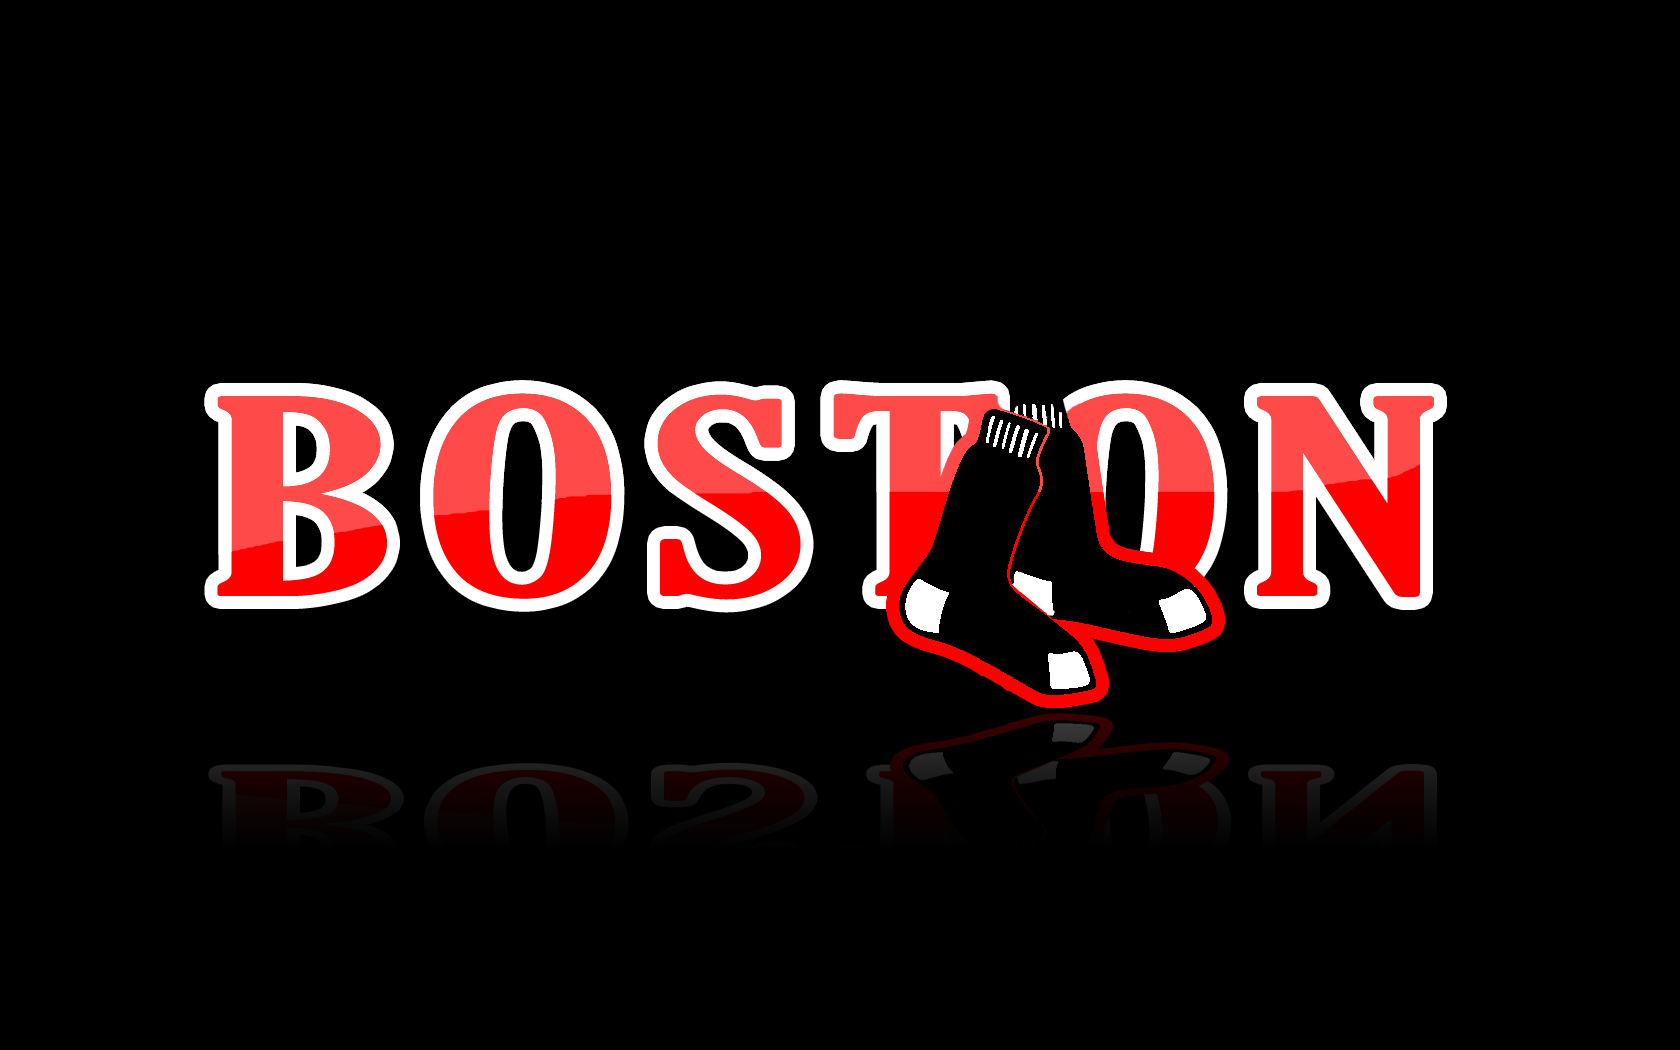 63+] Red Sox Logo Wallpaper - Wallpapersafari